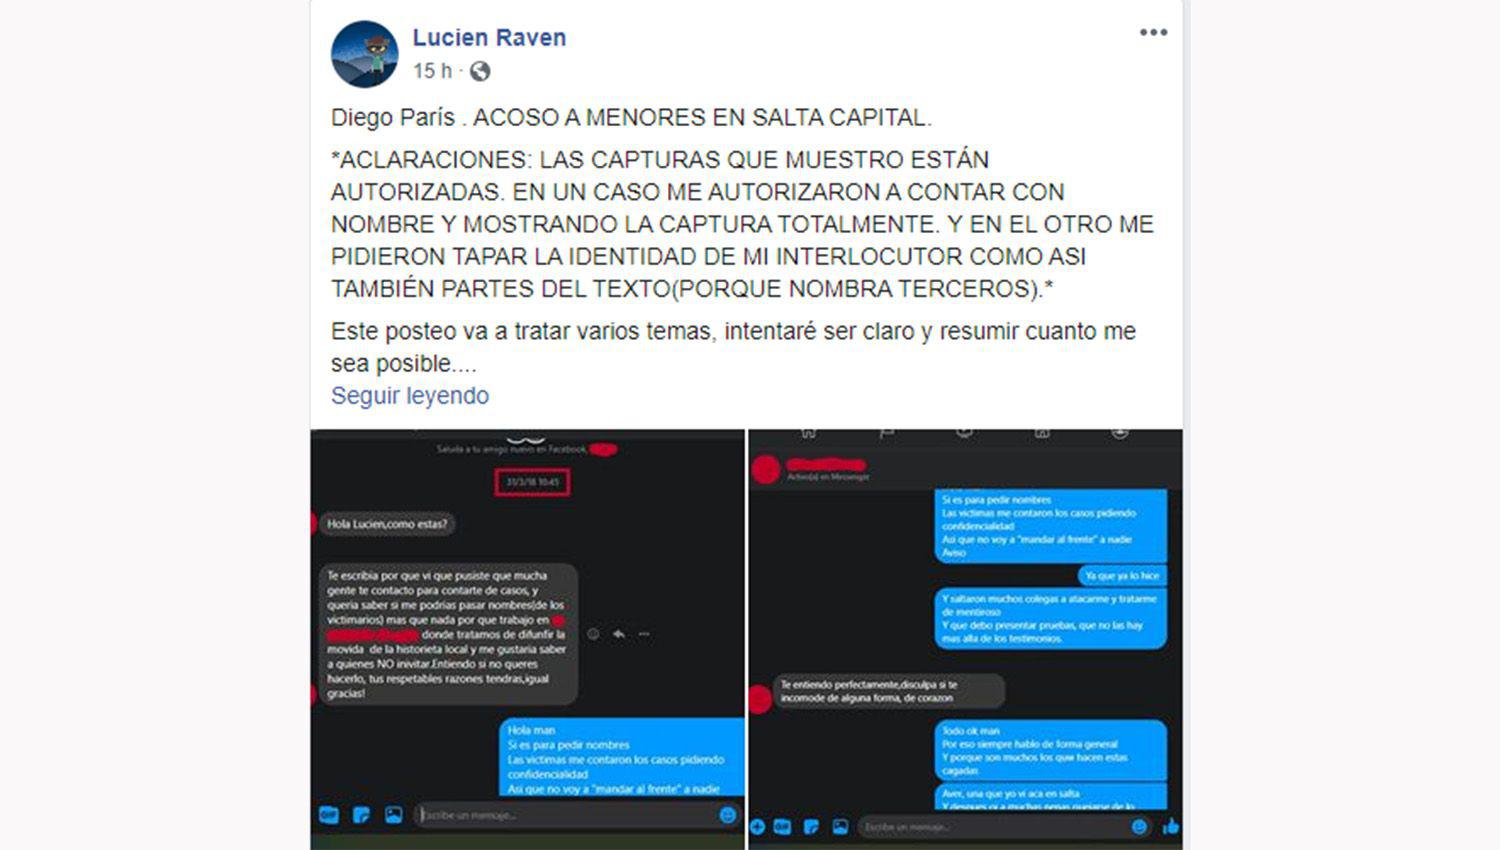 En Salta Diego Pariacutes fue acusado de acoso a cosplayers